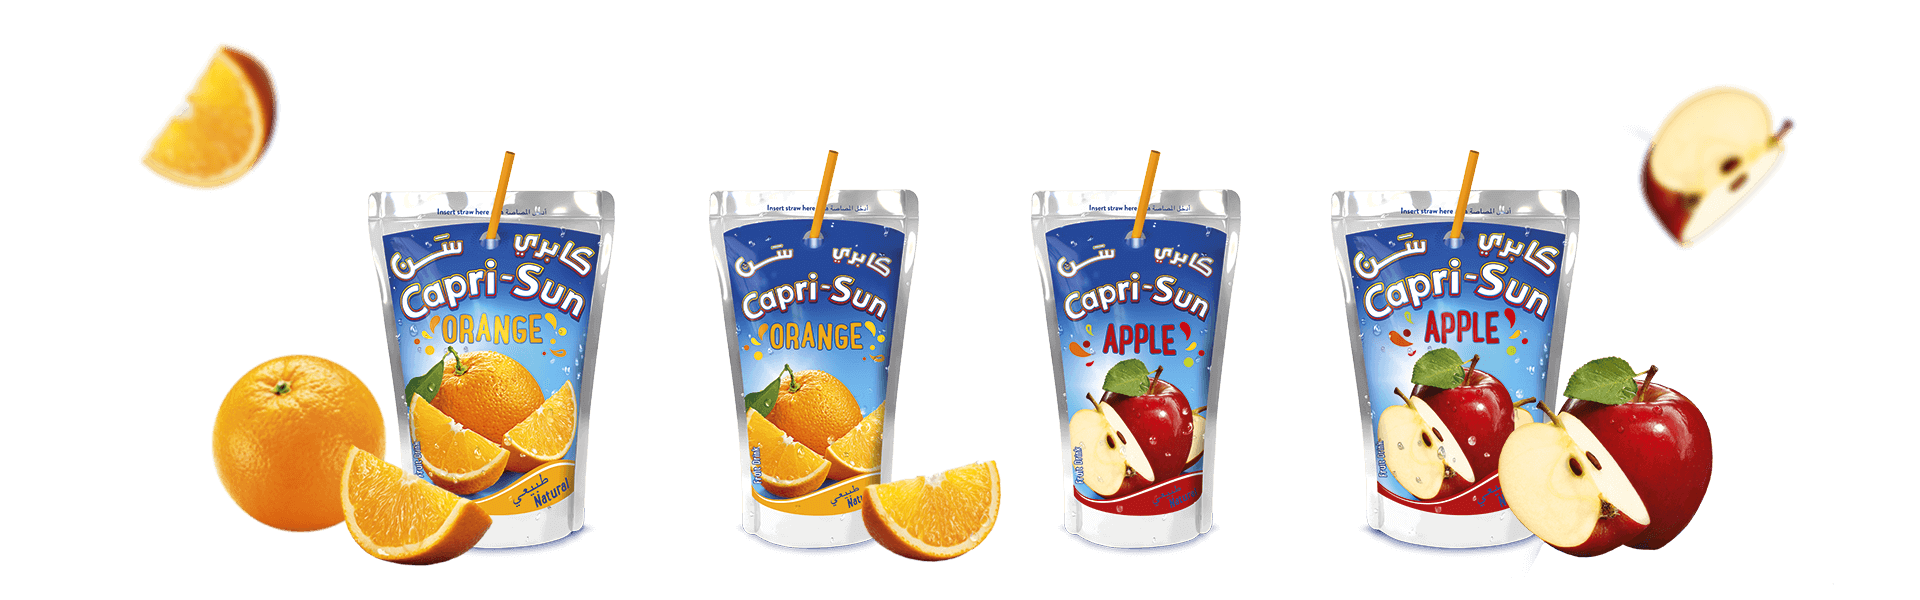 Capri-Sun Nigeria | Refreshing Fruit Juice Drinks